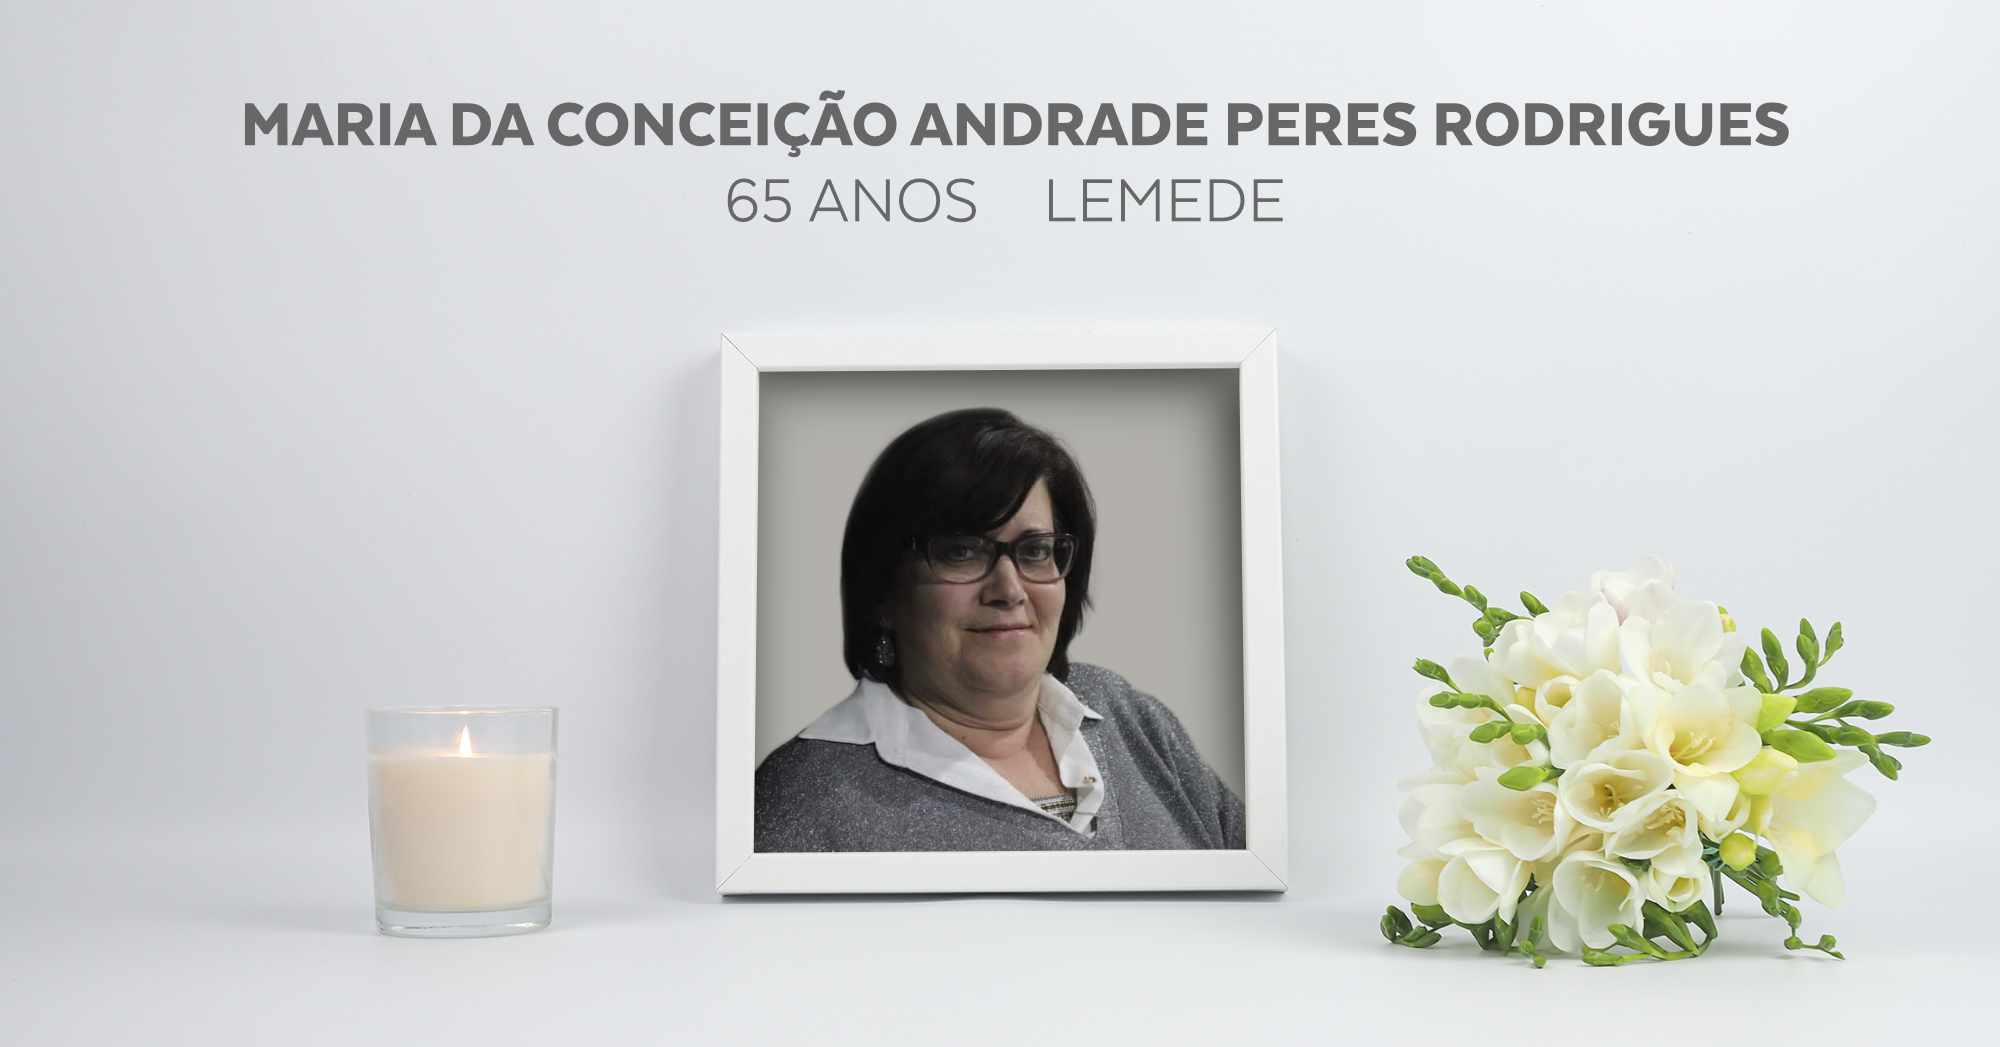 Maria da Conceição Andrade Peres Rodrigues